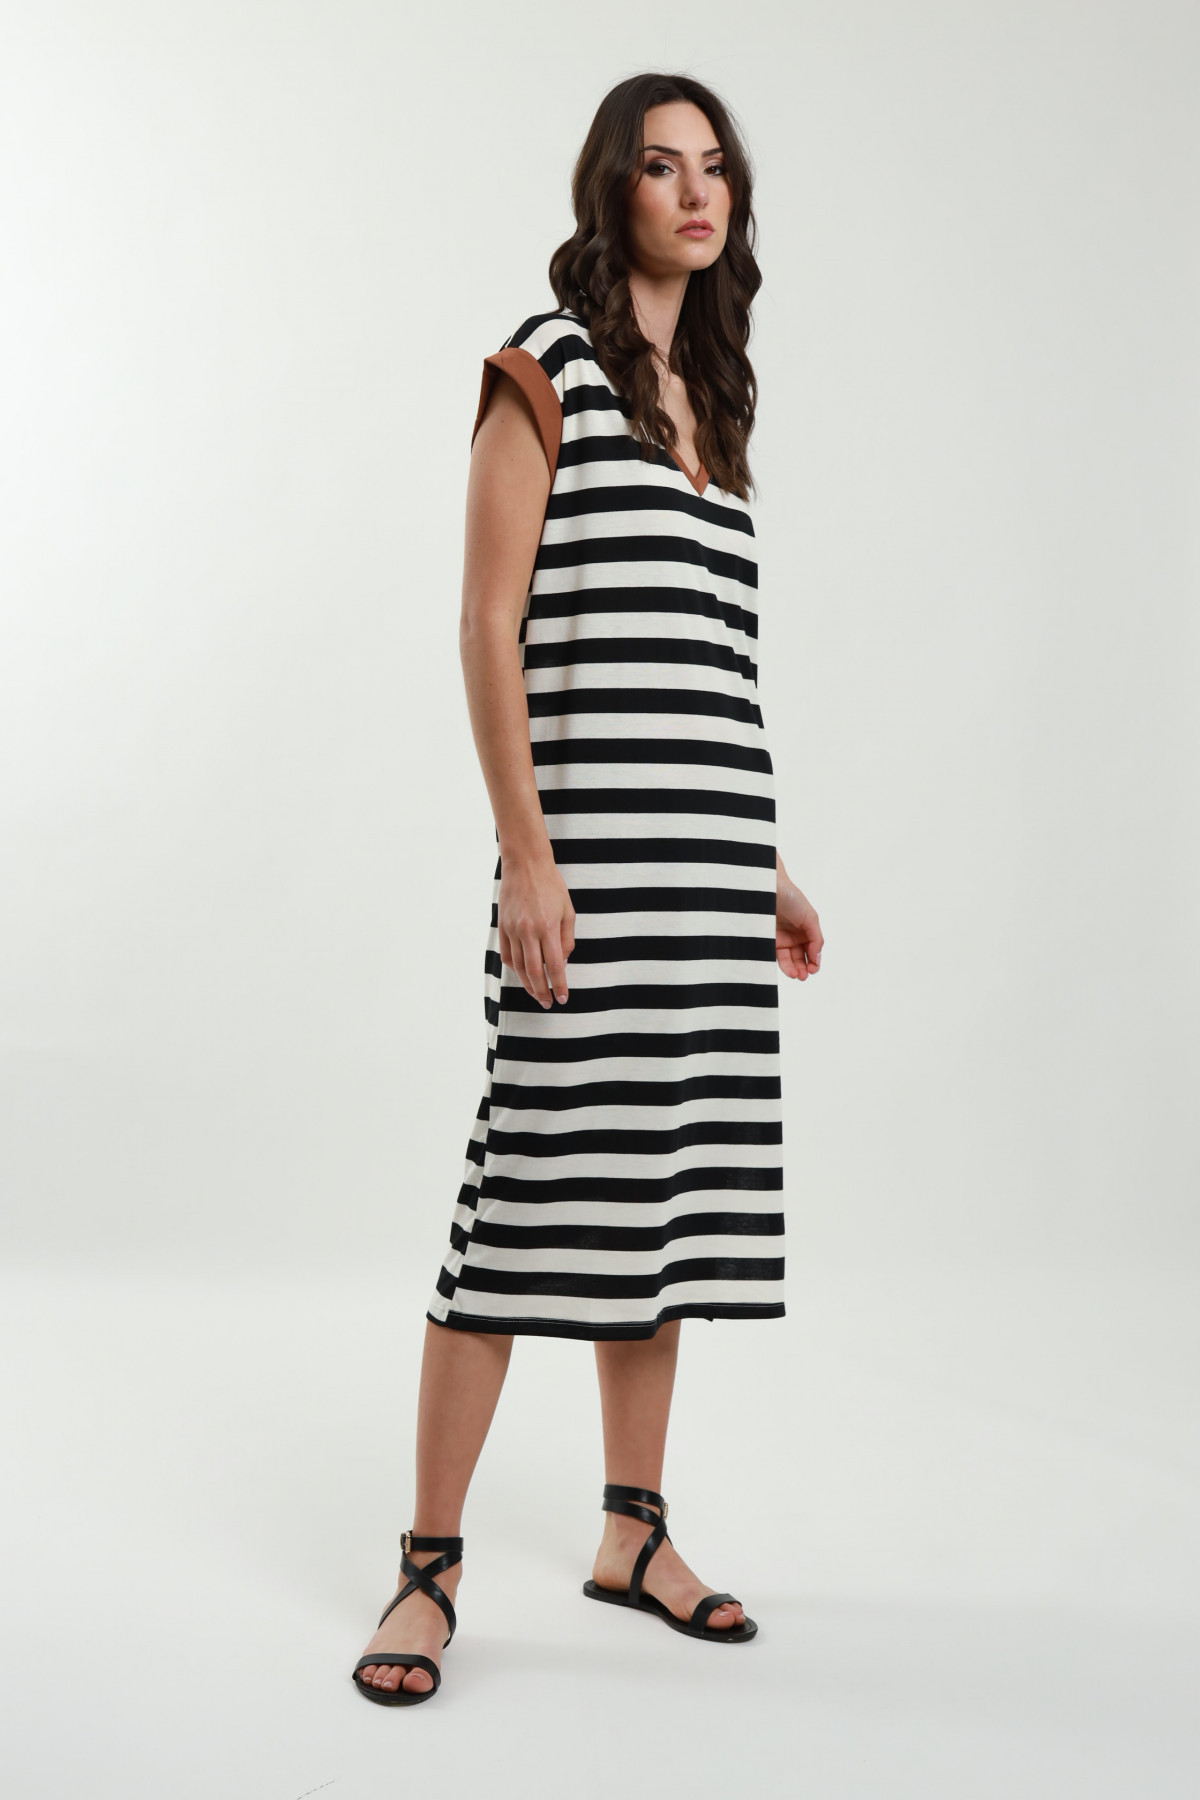 Striped dress with neckline